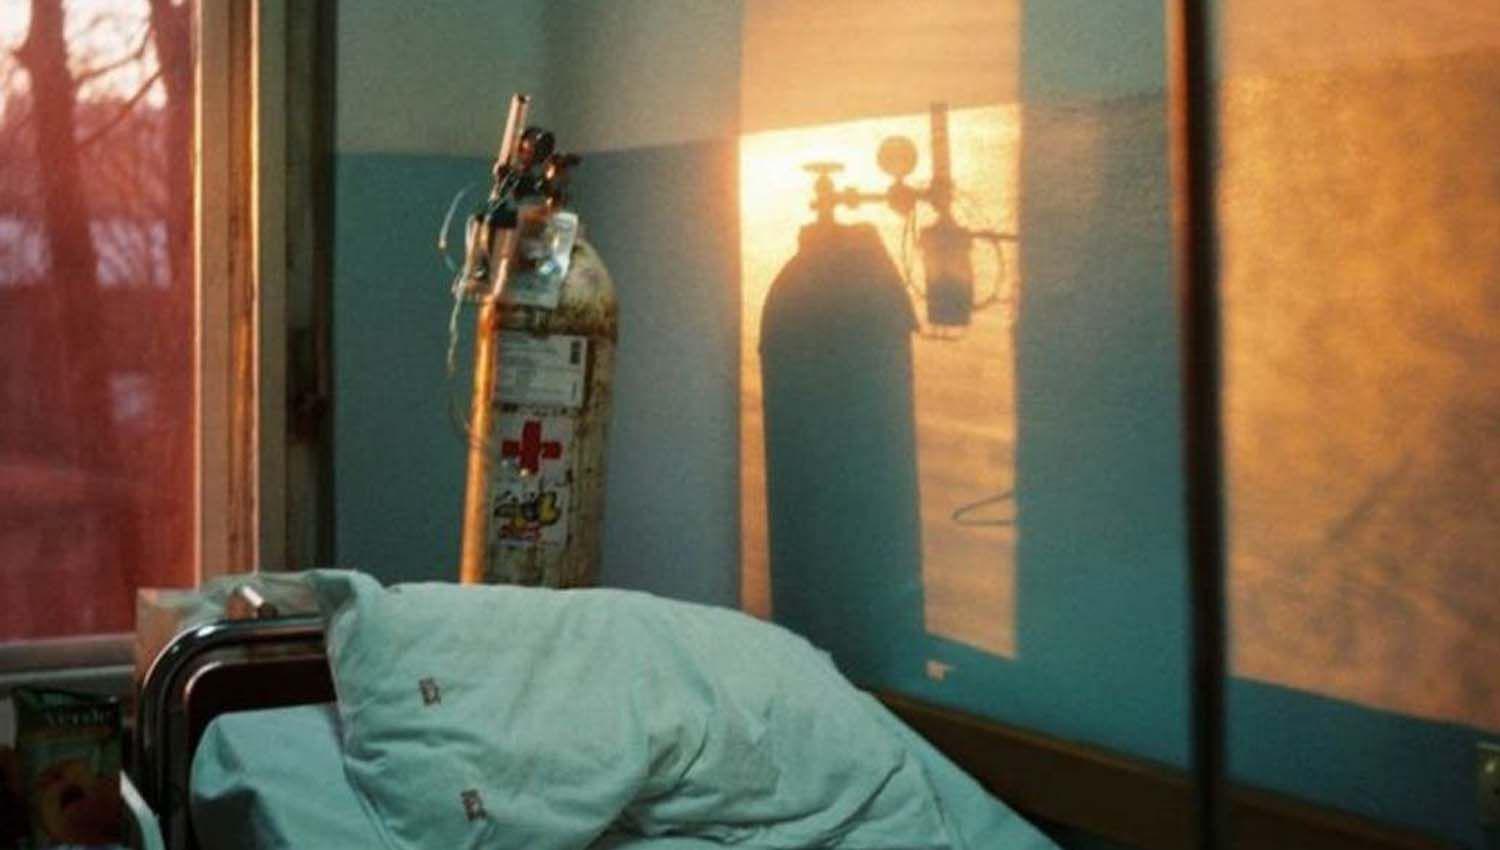 Paciente por Covid-19 matoacute con un tanque de oxiacutegeno a su compantildeero de cuarto porque se puso a rezar